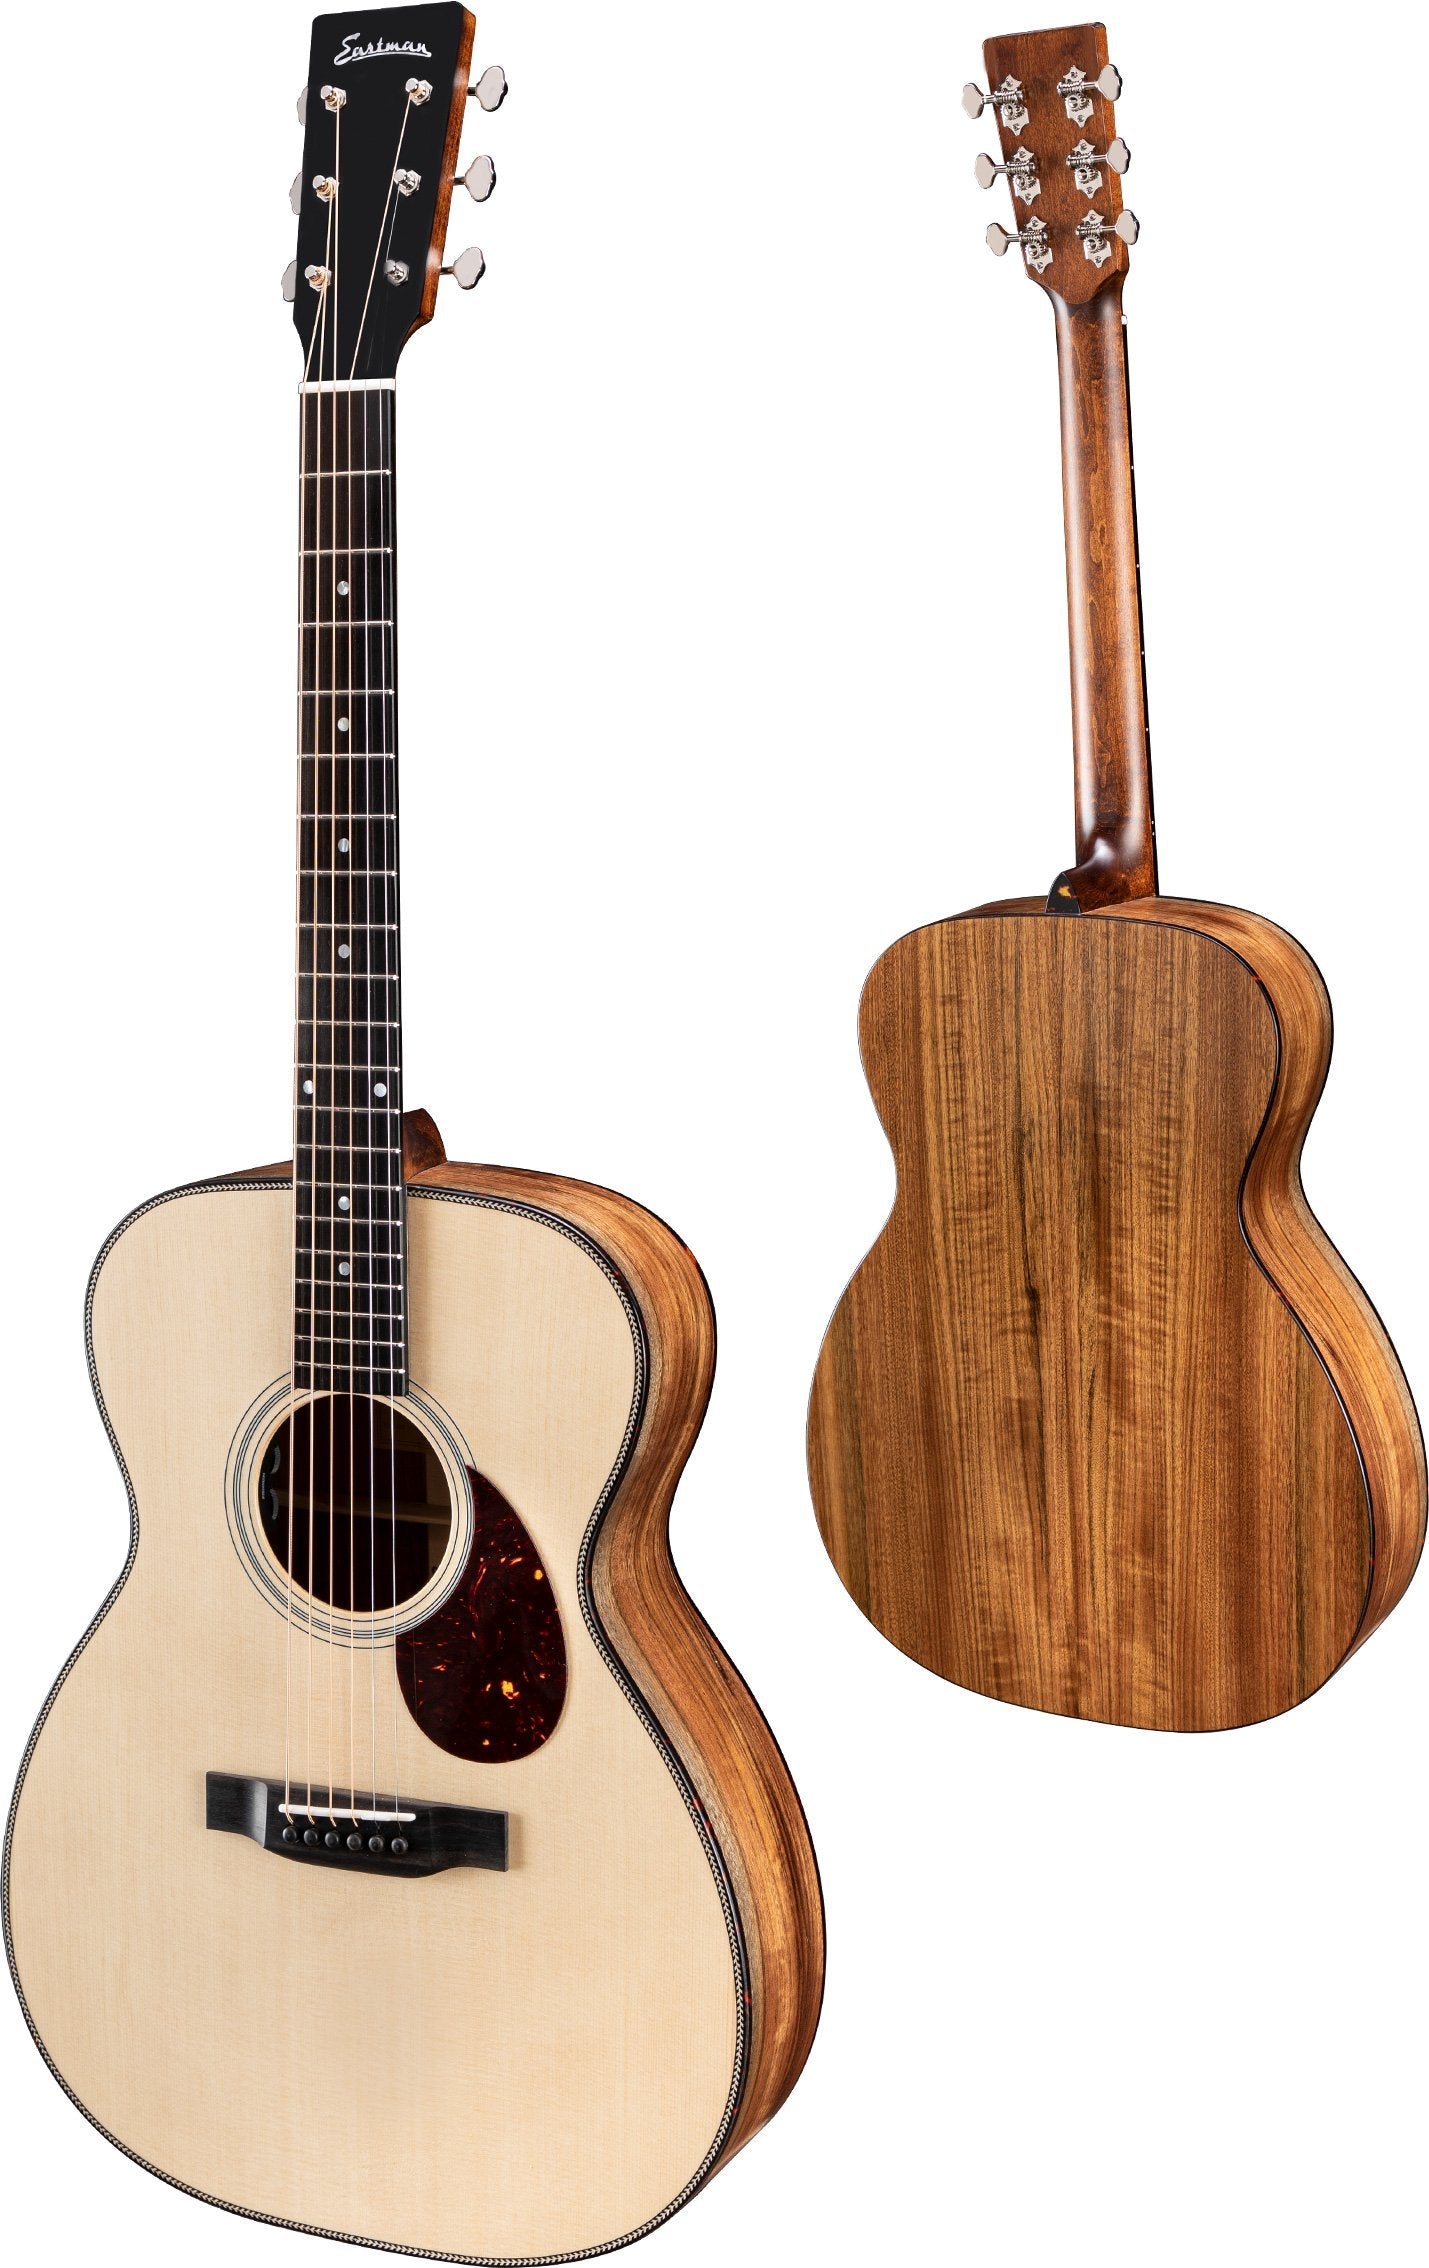 Eastman E3OMEl Natural LEFT HANDED, Acoustic Guitar for sale at Richards Guitars.